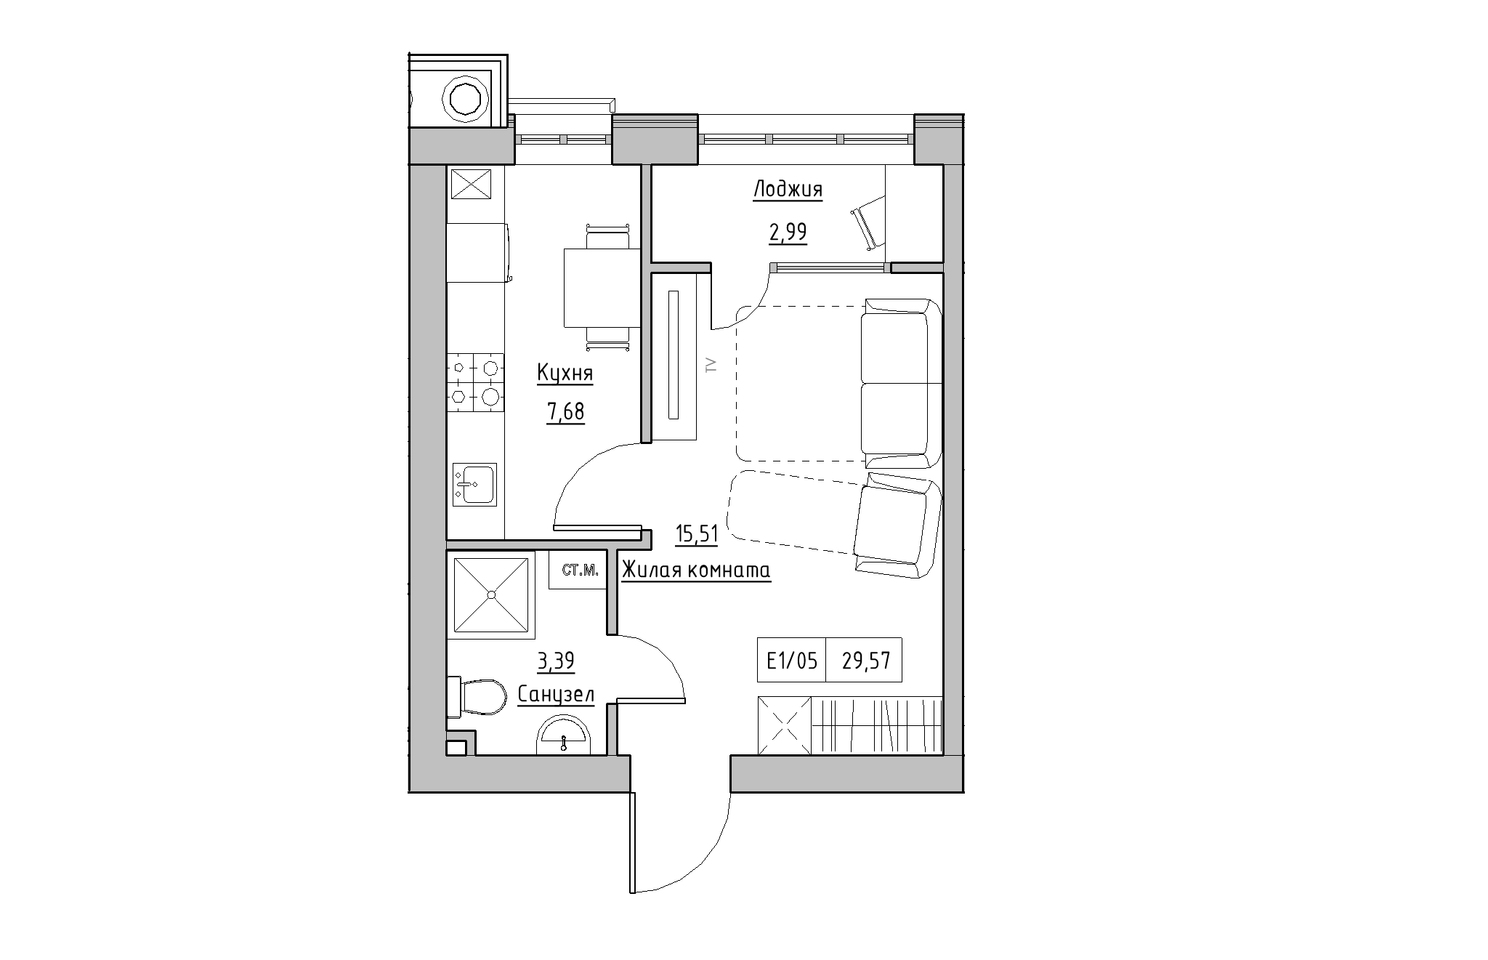 Планировка 1-к квартира площей 29.57м2, KS-010-03/0006.